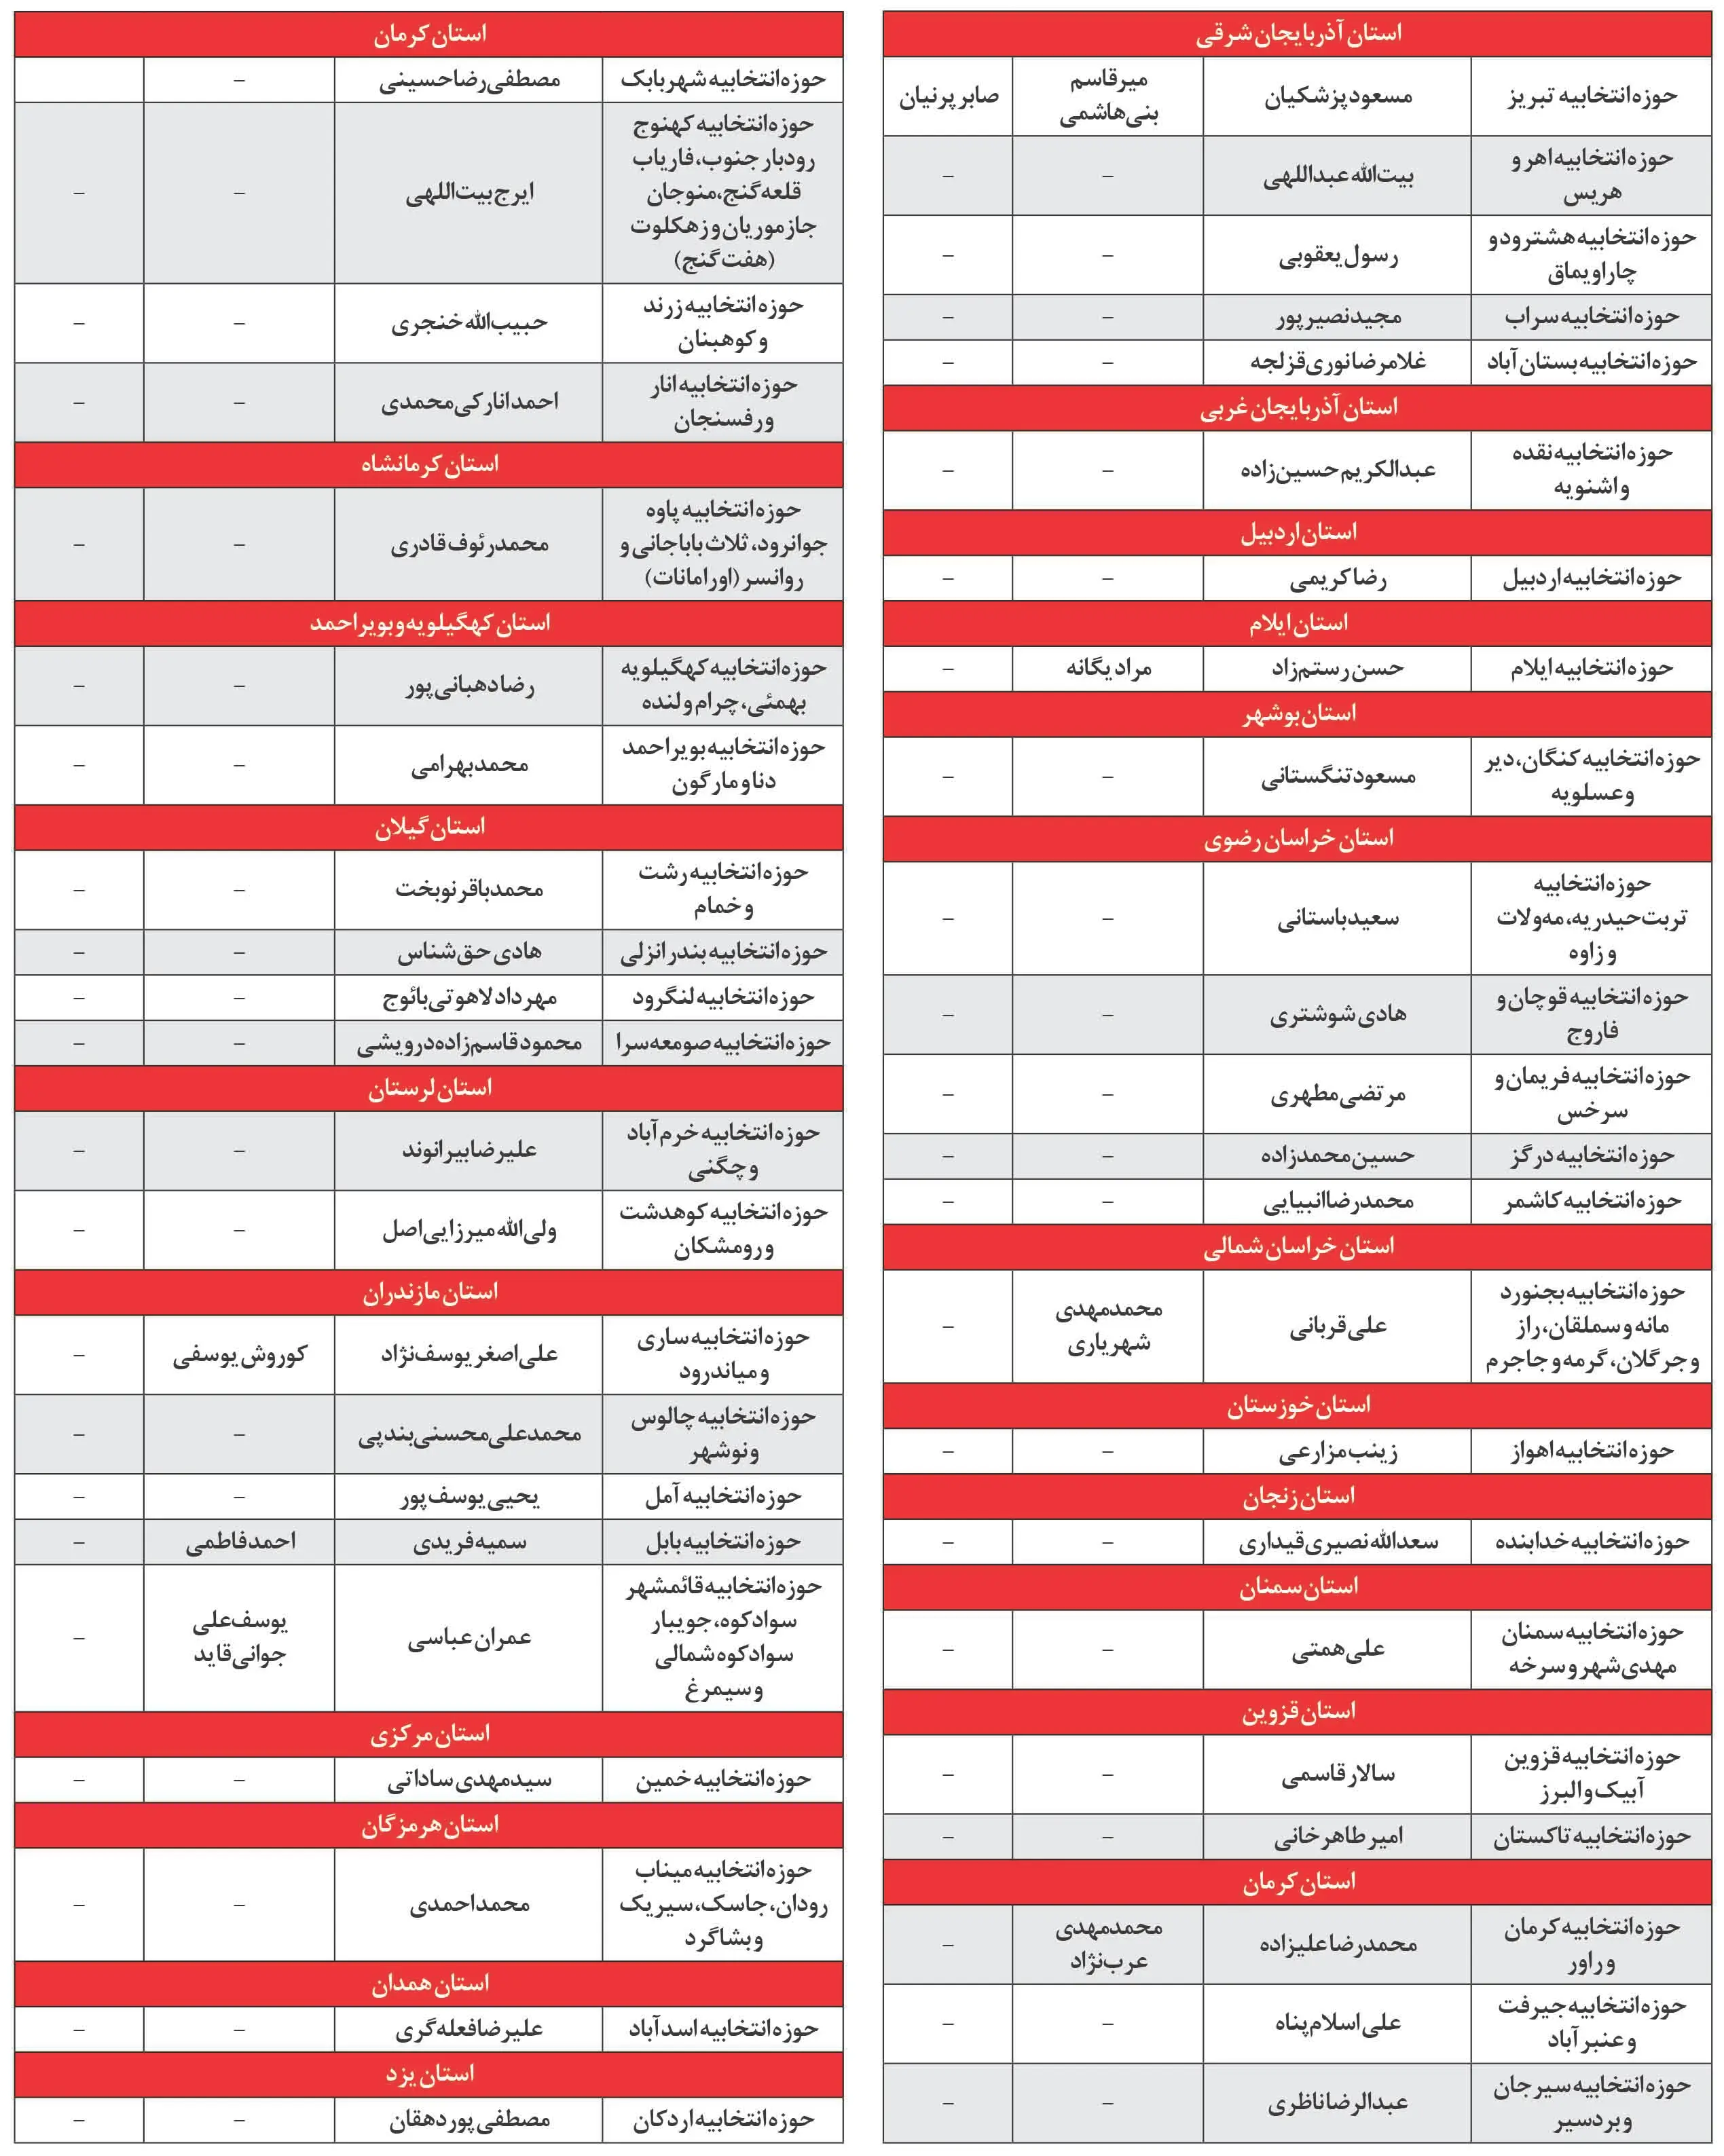 اسامی کاندیدهای مورد حمایت حزب اعتمادملی در انتخابات مجلس